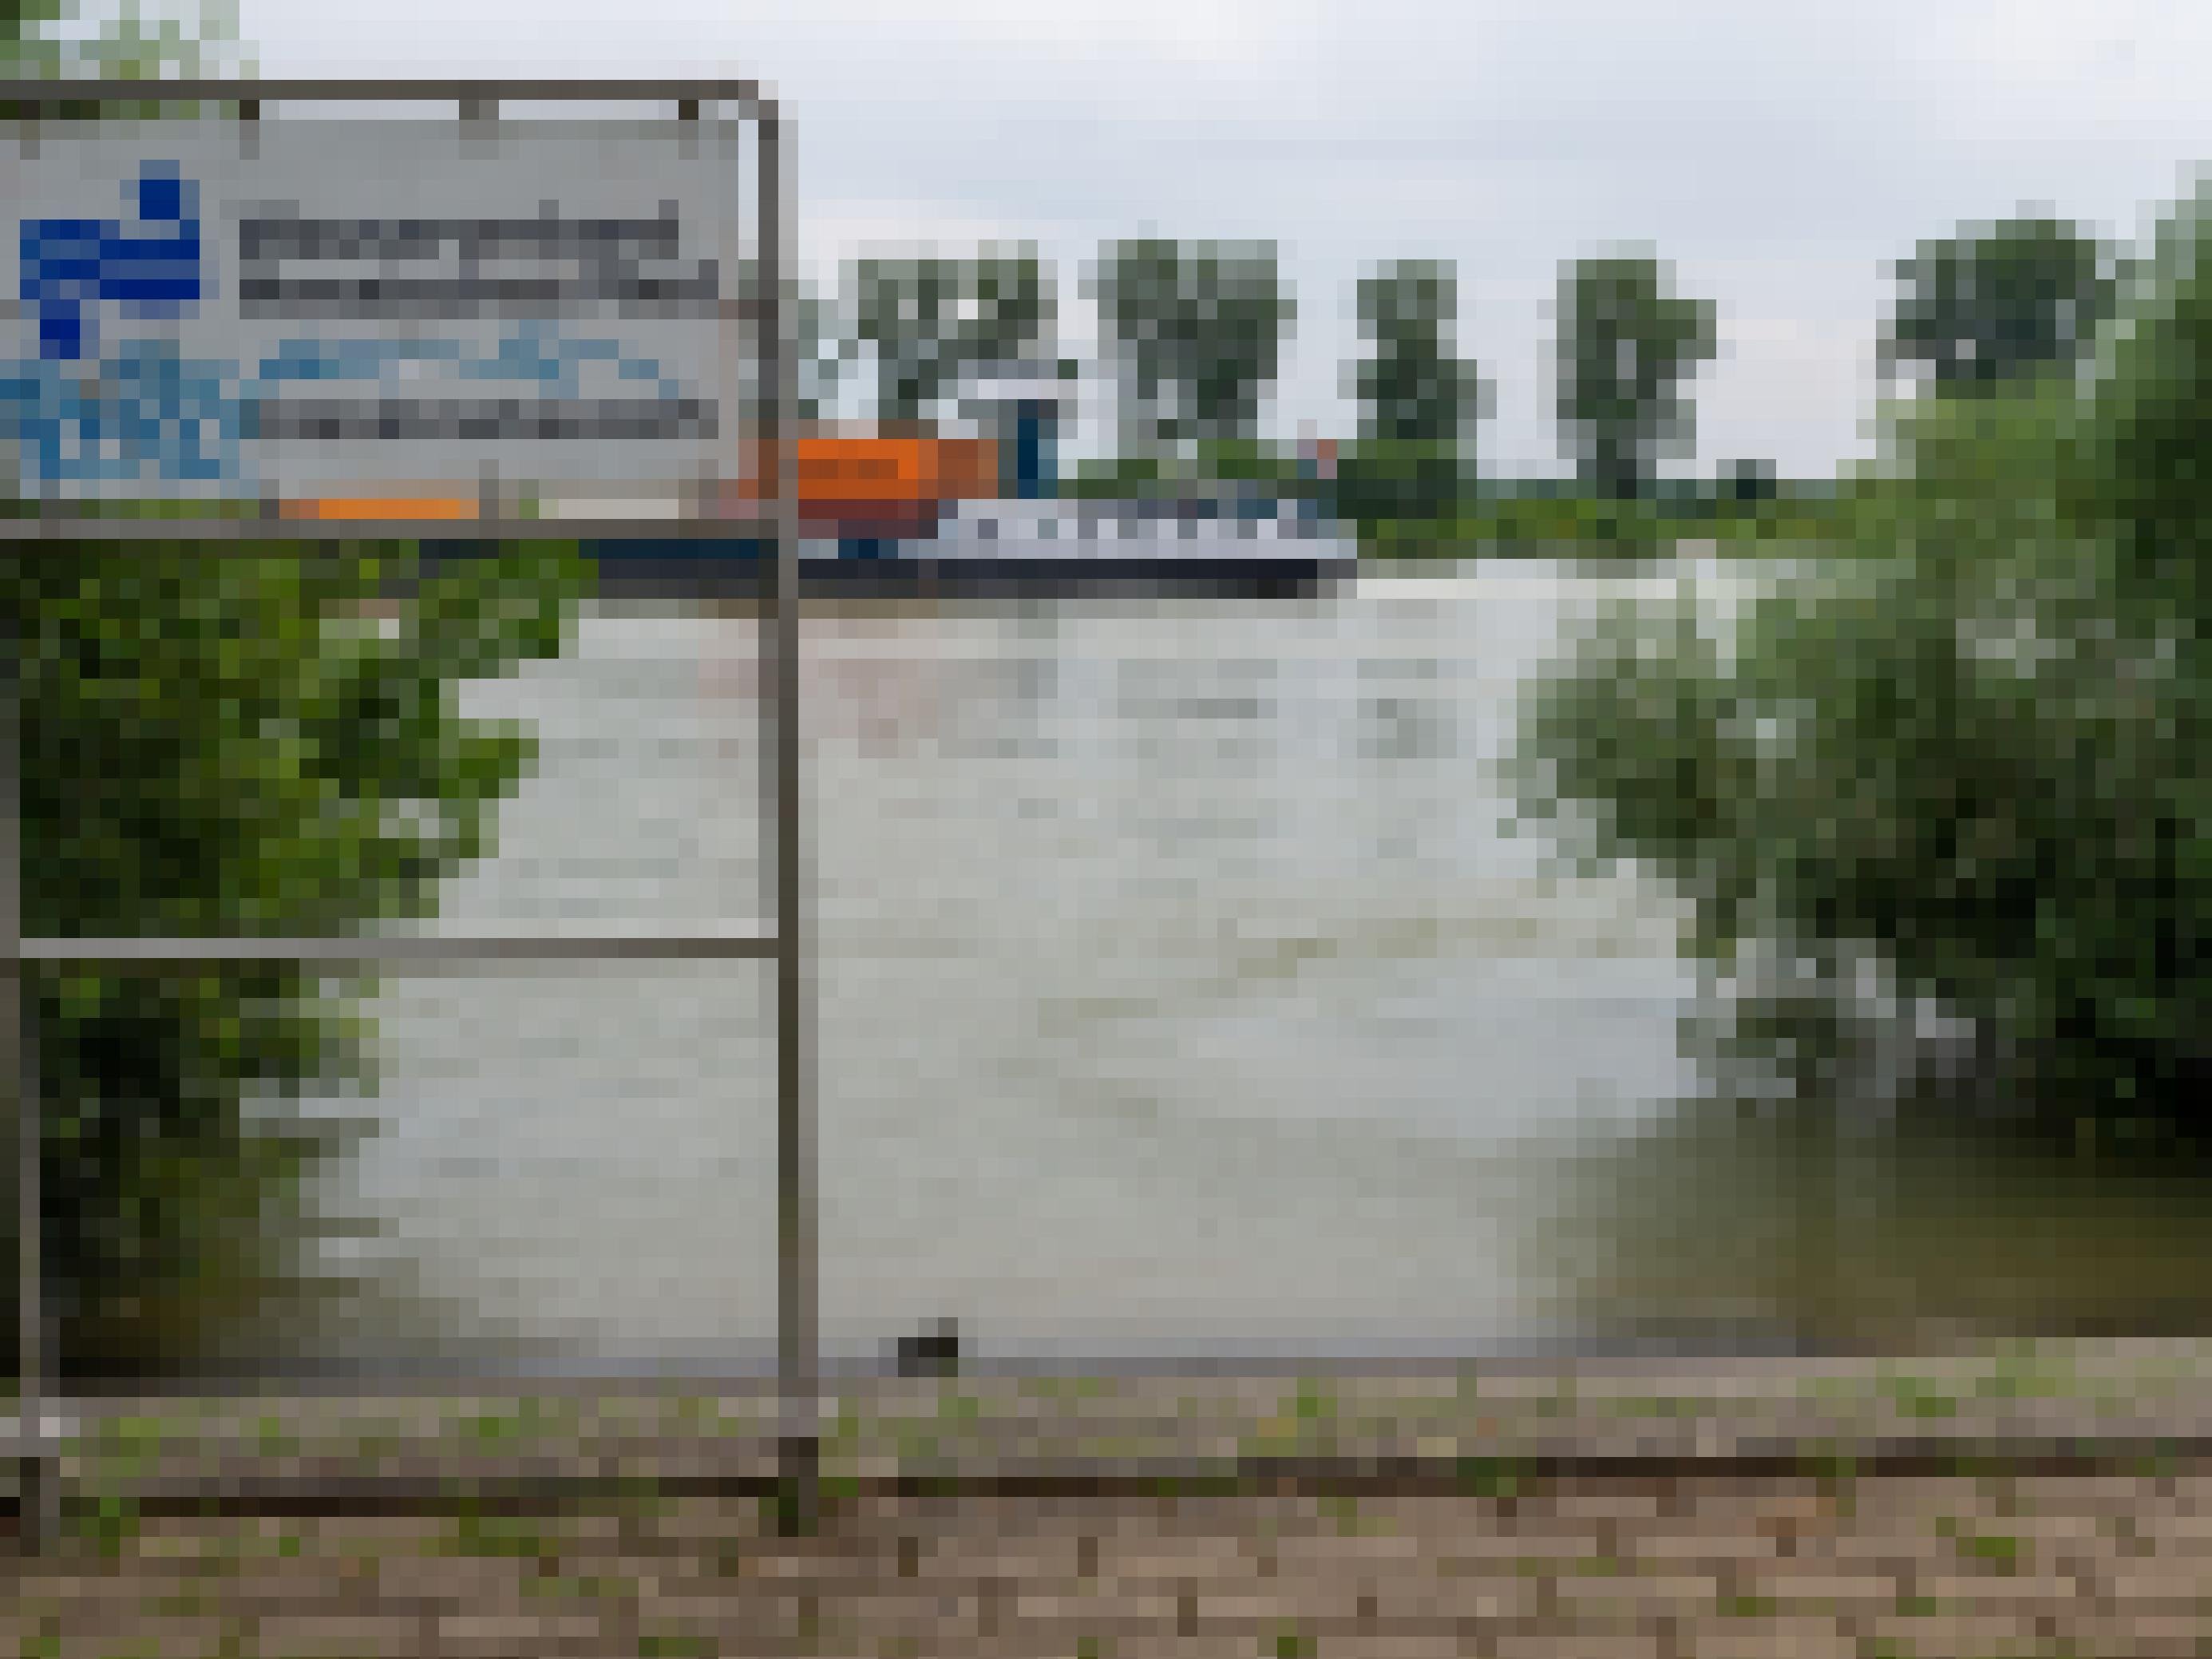 Schild „Entnahmebauwerk“ direkt am Rheinufer, Auf dem Fluss fährt ein Schiff zum linken Bildrand